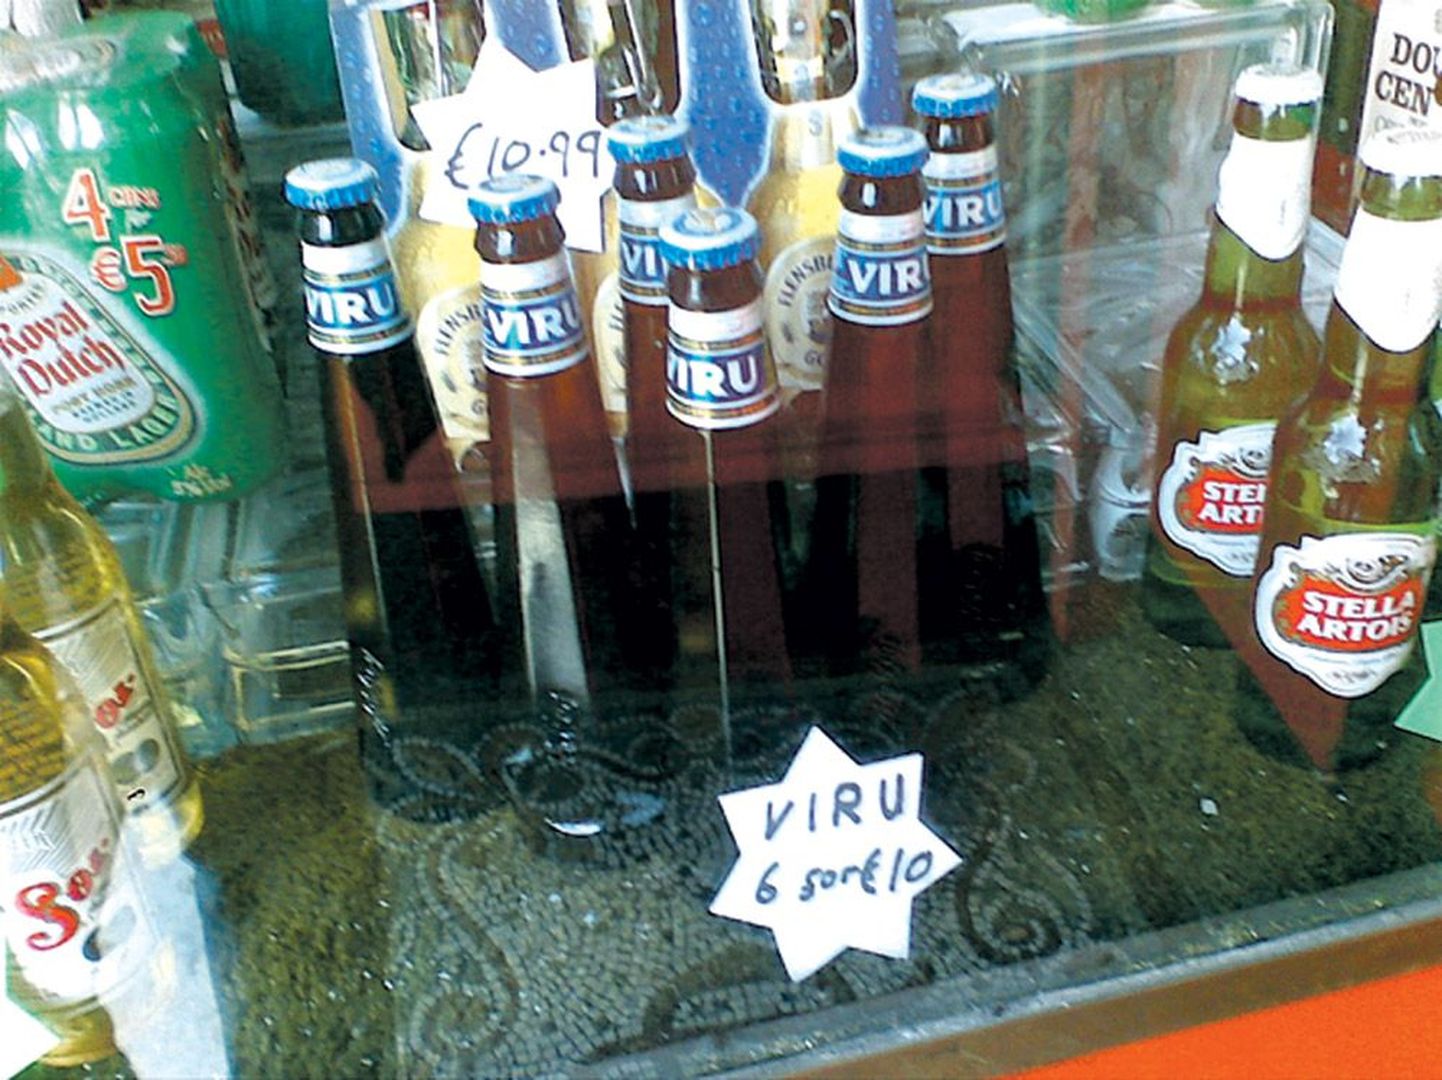 Tartus A. Le Coqi tehases toodetud Viru õlu oli paari nädala eest müügil ka ühes Dublini poes. Nimi Viru õlu viitab Tarmo Noobi selgitusel Eestile (Viru), mitte õlletootjale ASile Viru Õlu.